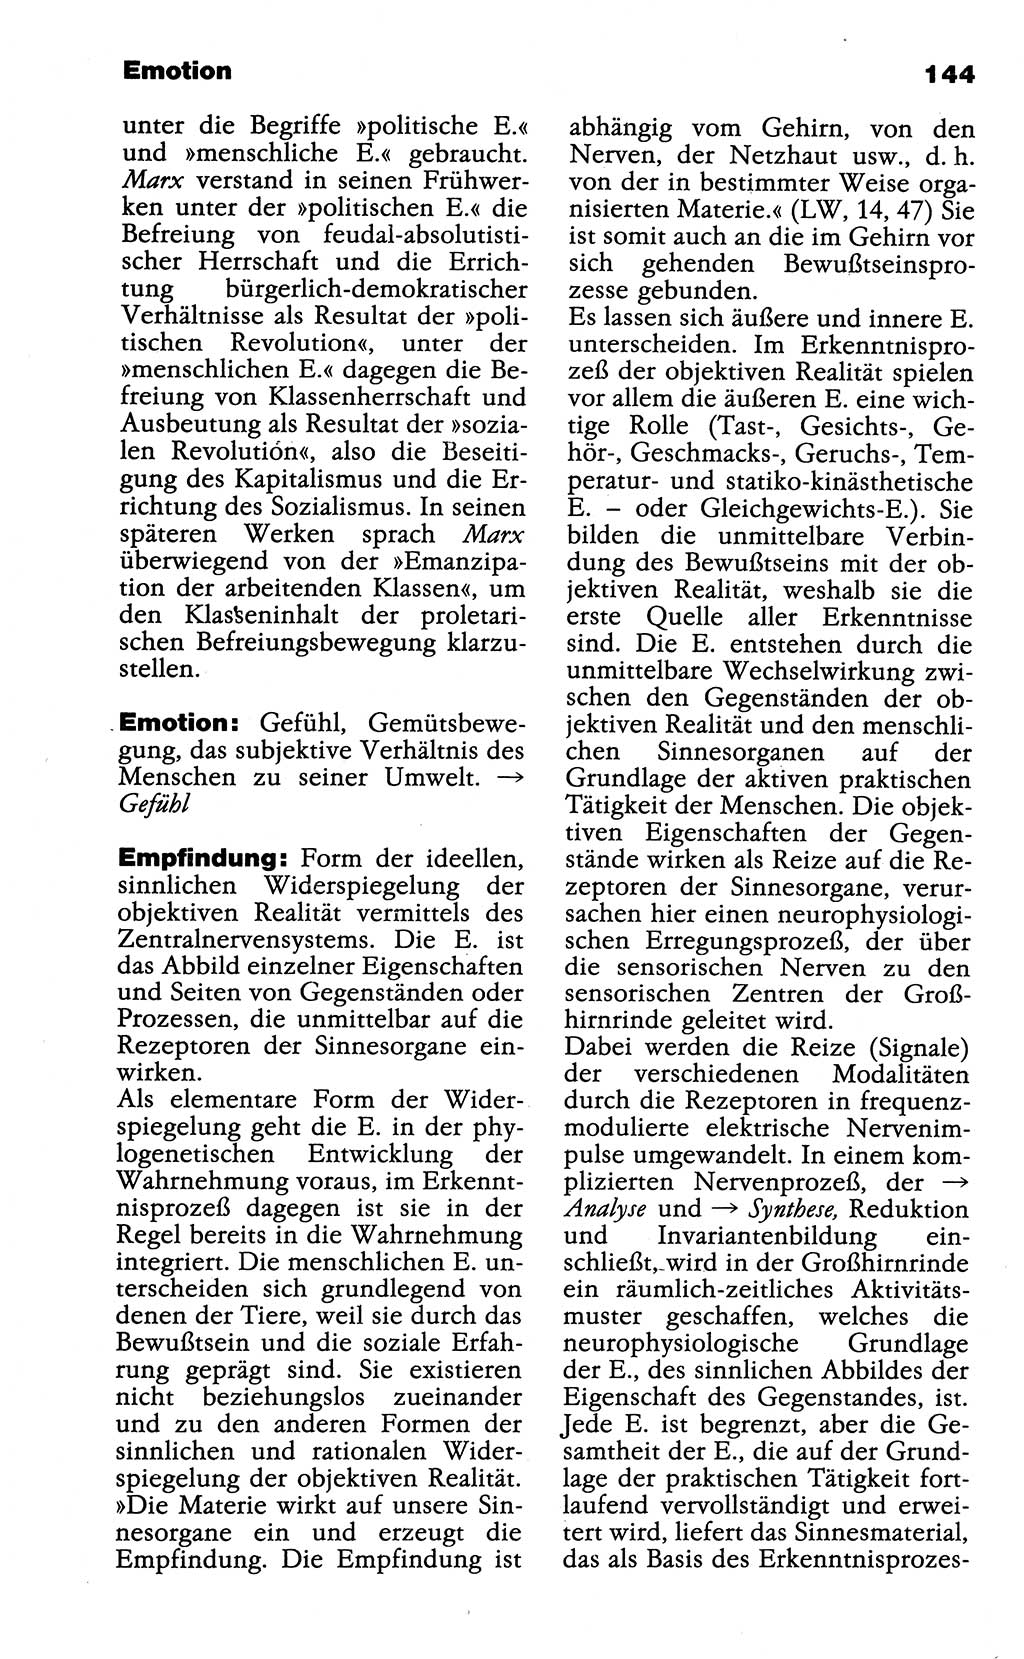 Wörterbuch der marxistisch-leninistischen Philosophie [Deutsche Demokratische Republik (DDR)] 1985, Seite 144 (Wb. ML Phil. DDR 1985, S. 144)